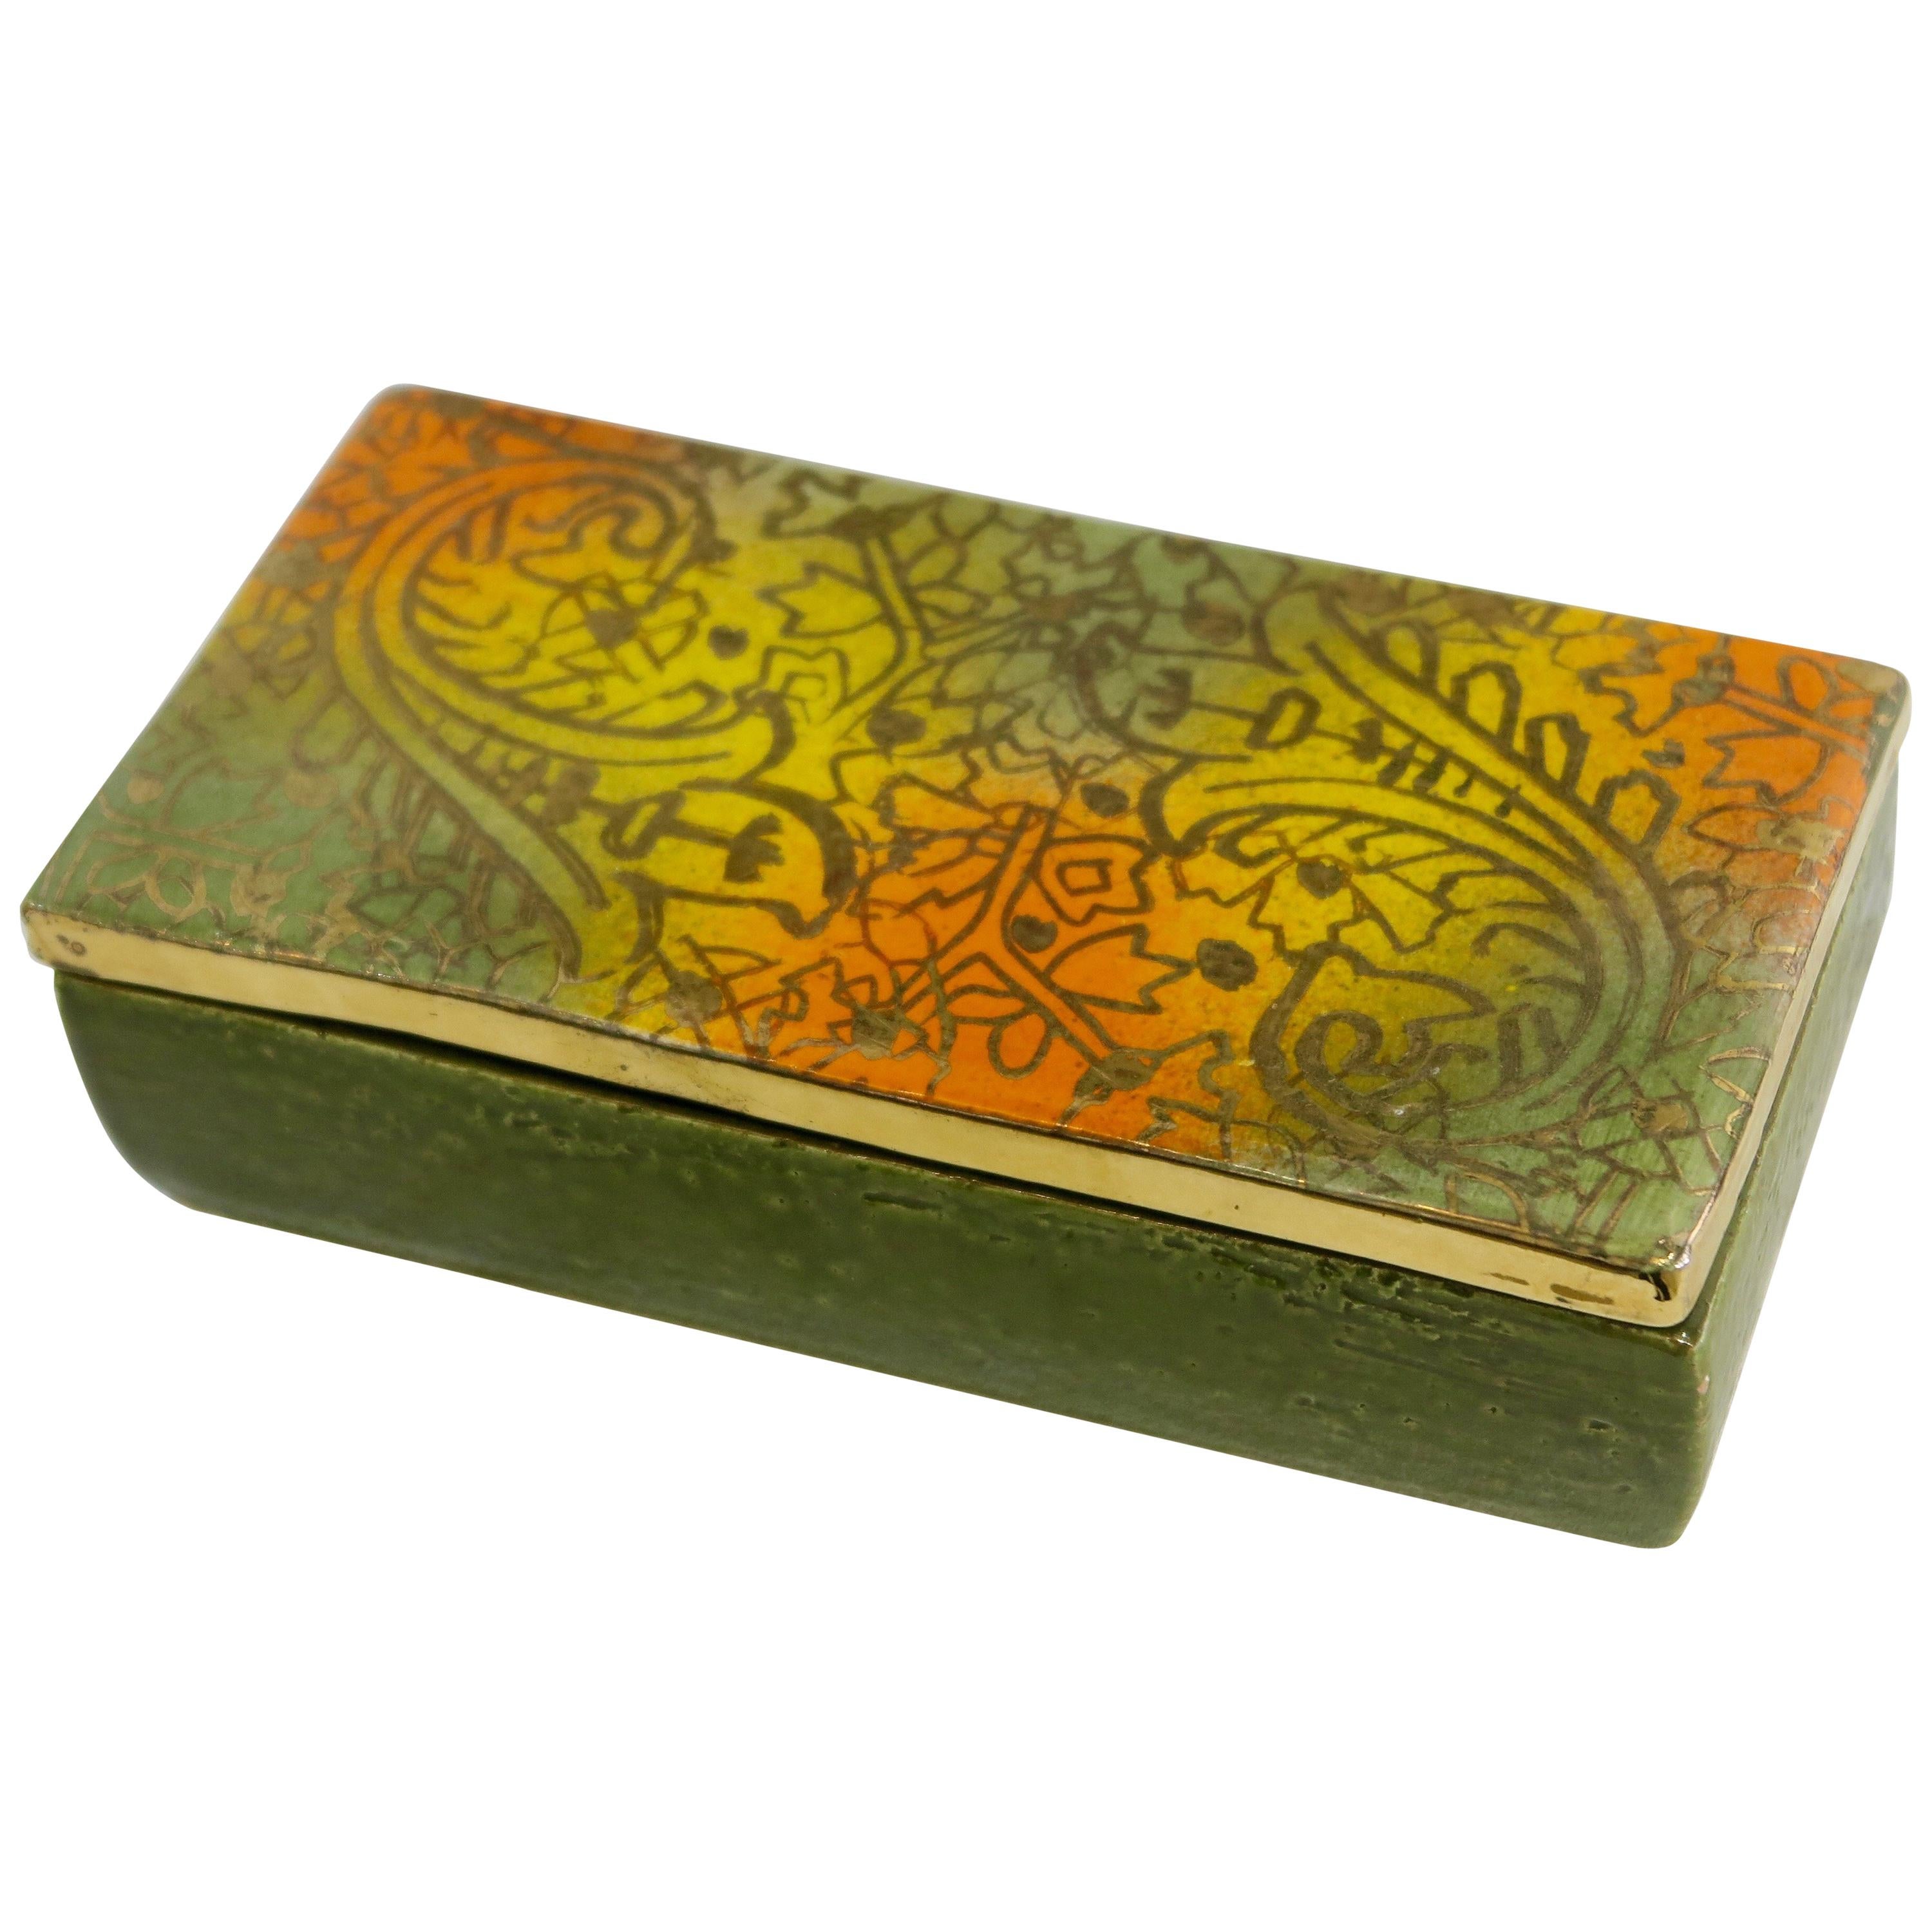 Aldo Londi Bitossi Ceramic Box